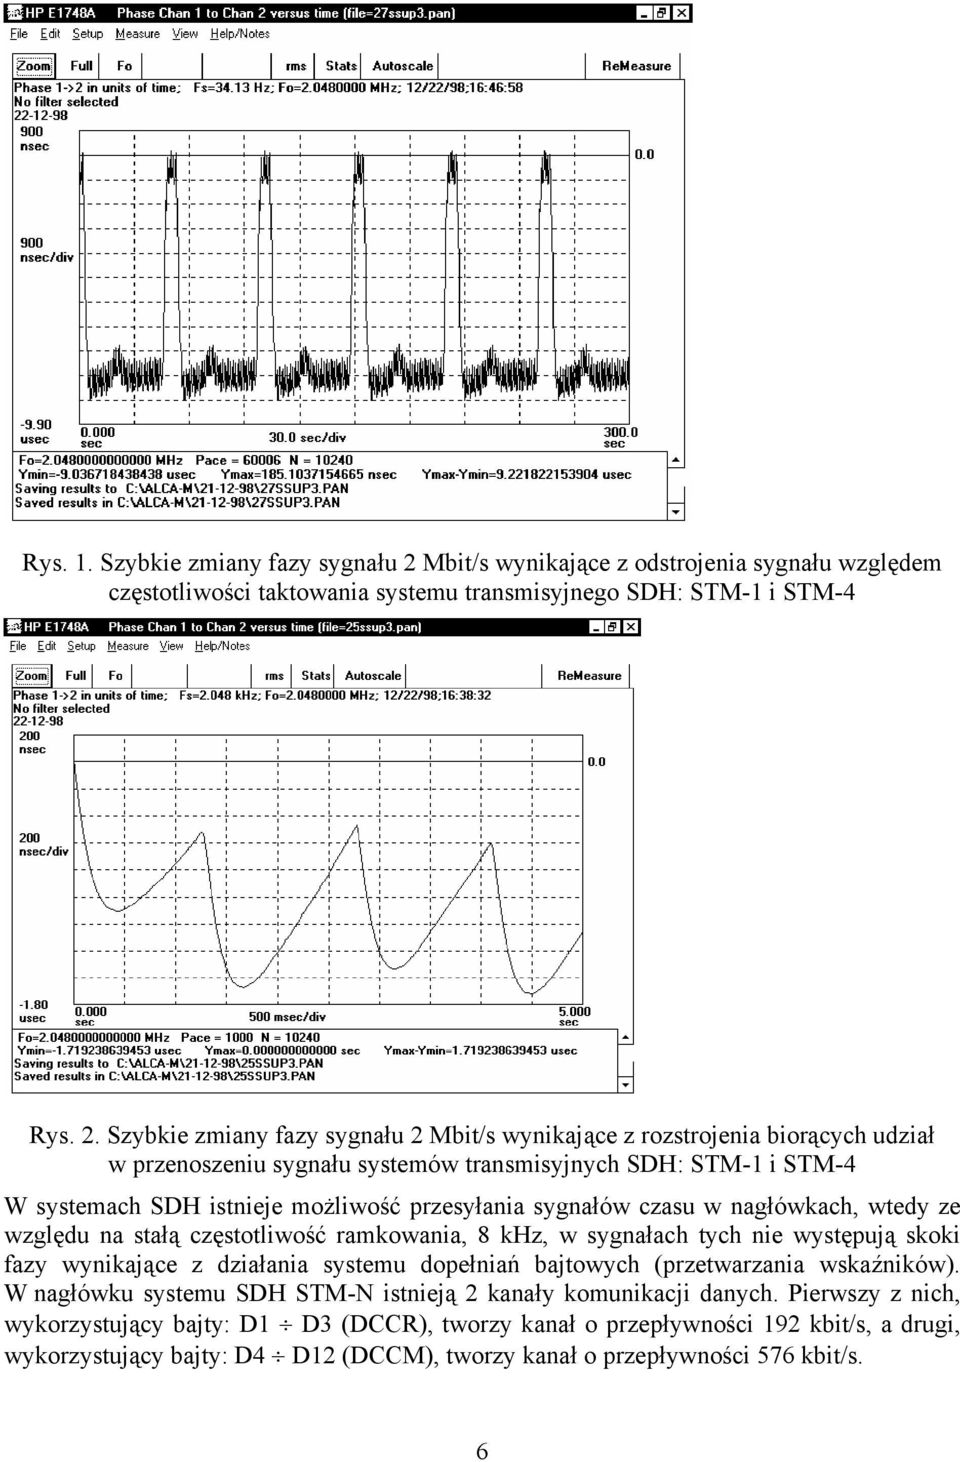 Szybkie zmiany fazy sygnału 2 Mbit/s wynikające z rozstrojenia biorących udział w przenoszeniu sygnału systemów transmisyjnych SDH: STM-1 i STM-4 W systemach SDH istnieje możliwość przesyłania